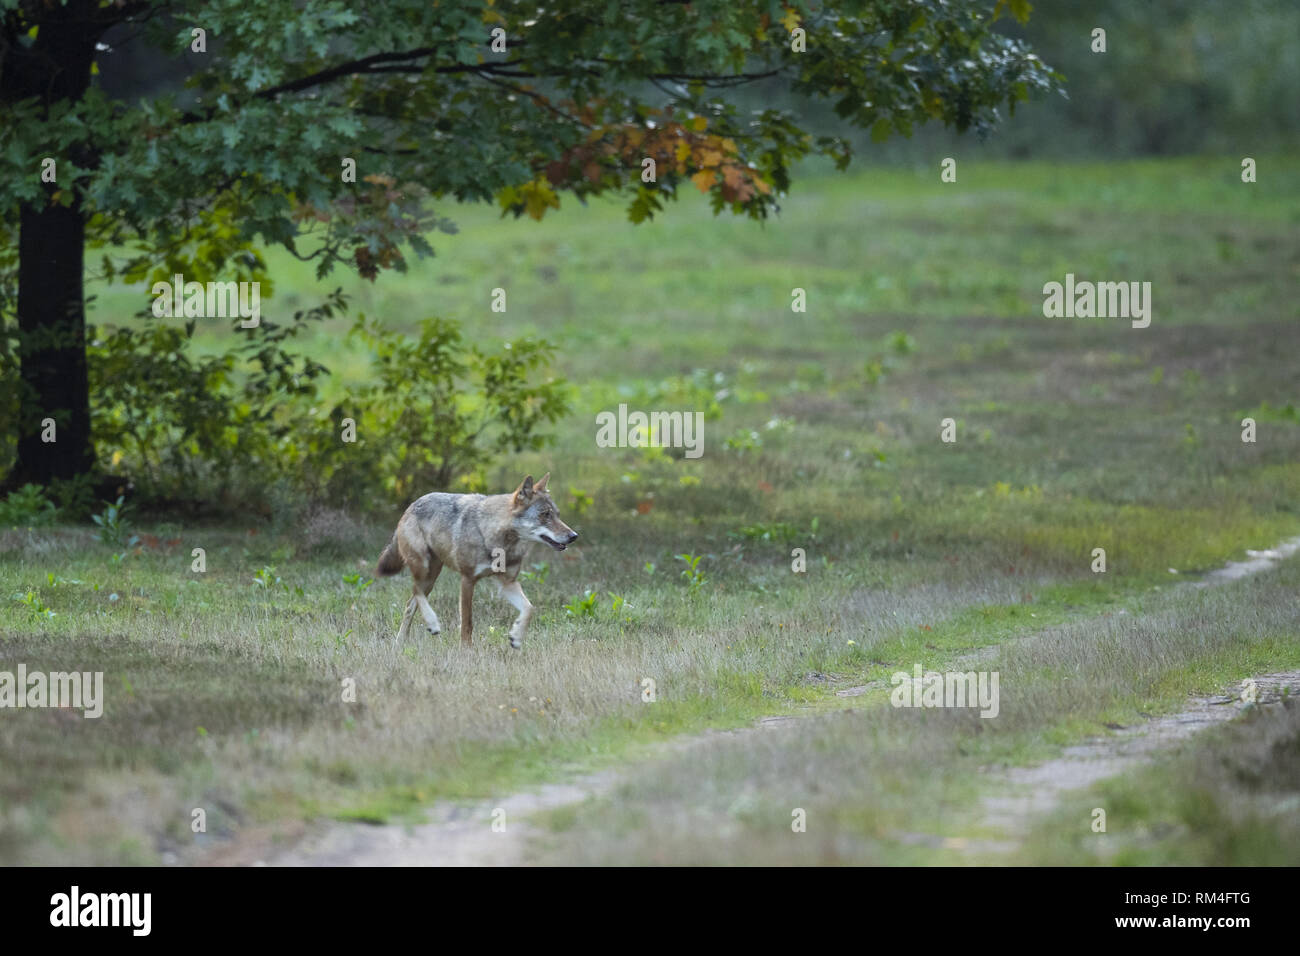 Wolf (Canis lupus) sur un chemin de terre, soegel, Basse-Saxe, Allemagne Banque D'Images